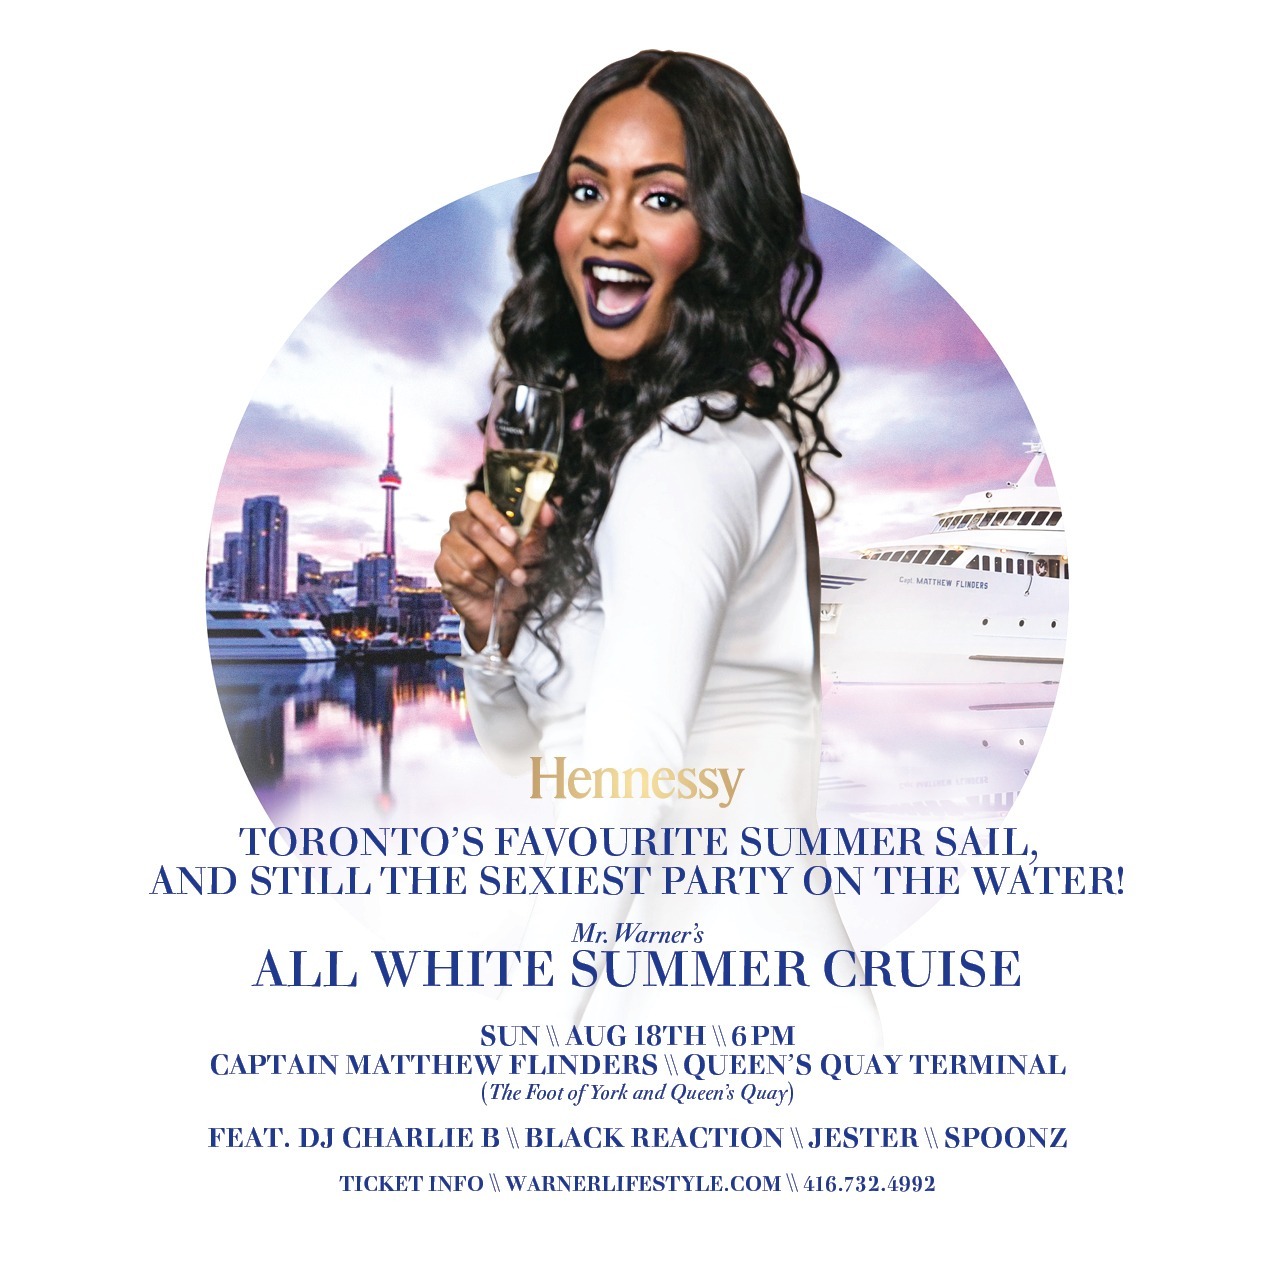 Mr. Warner's All White Summer Cruise